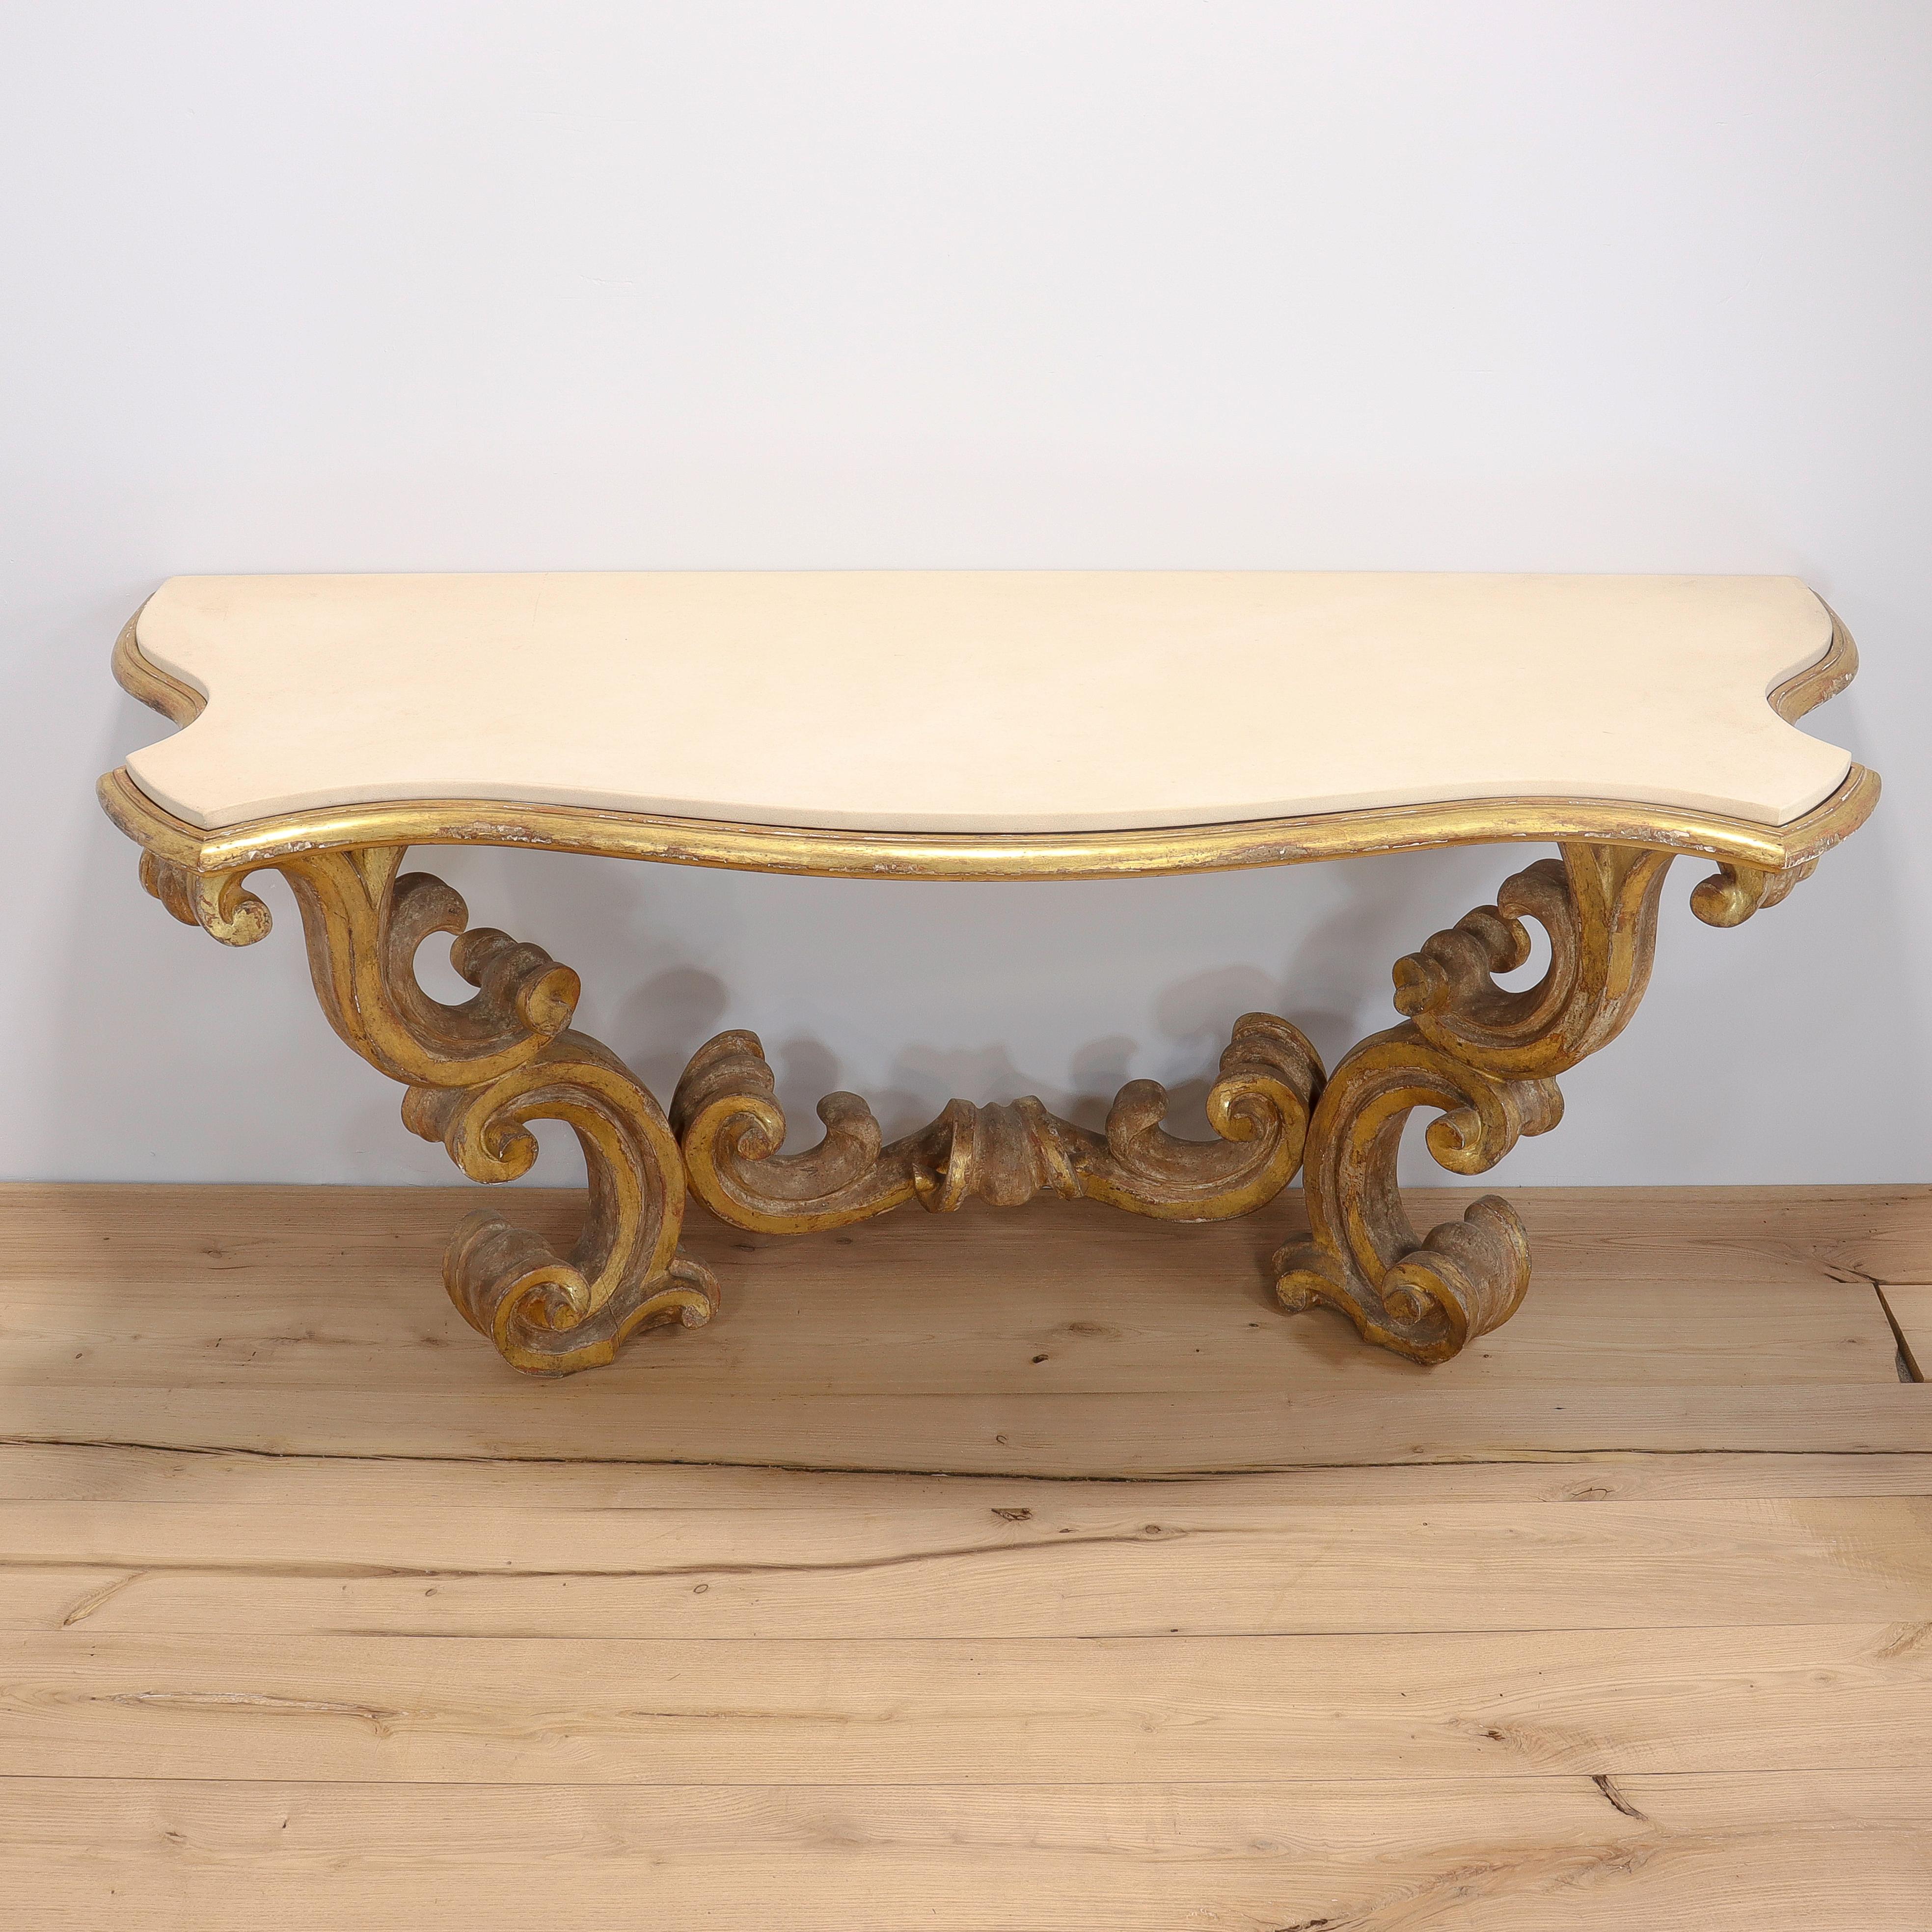 Ein feiner maßgefertigter Tisch im Stil Louis XV oder Rokoko.

Mit einem gessozialisierten und vergoldeten Holzsockel im hohen Rokoko-Stil mit geschnitzten 